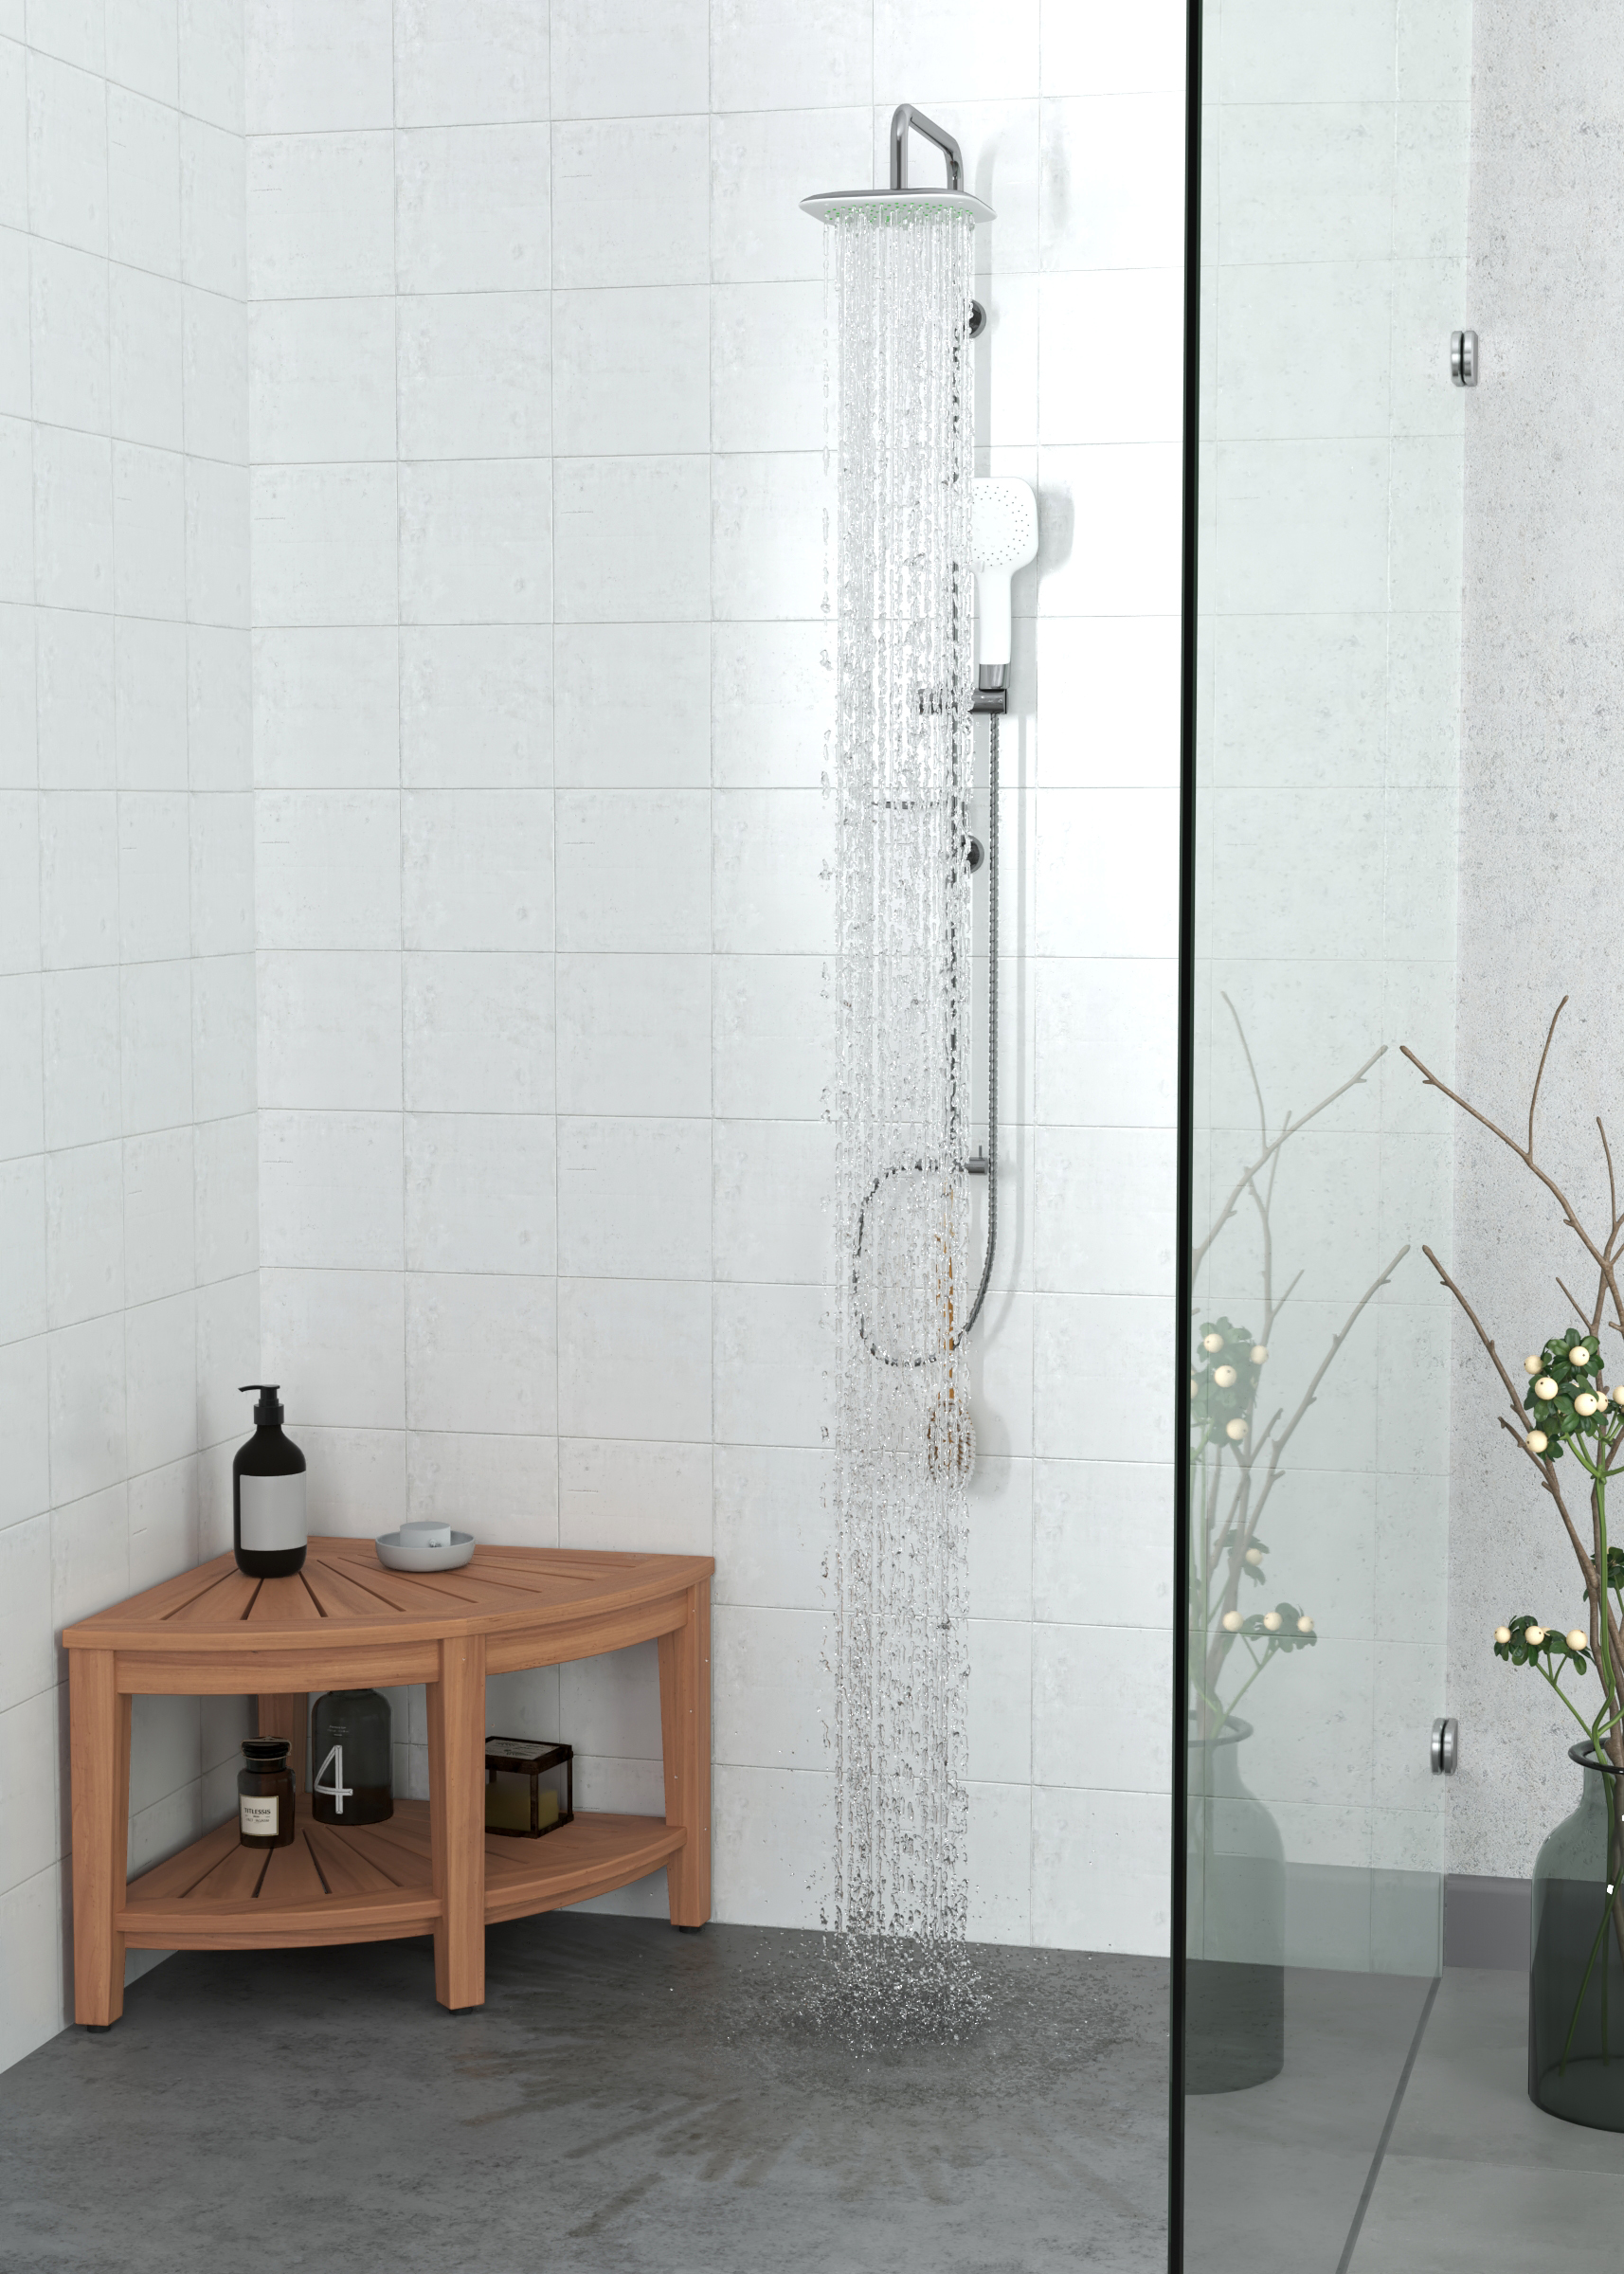 The Original Kai™ Corner Teak Bath Shelf - Luxury Teak Storage I AquaTeak